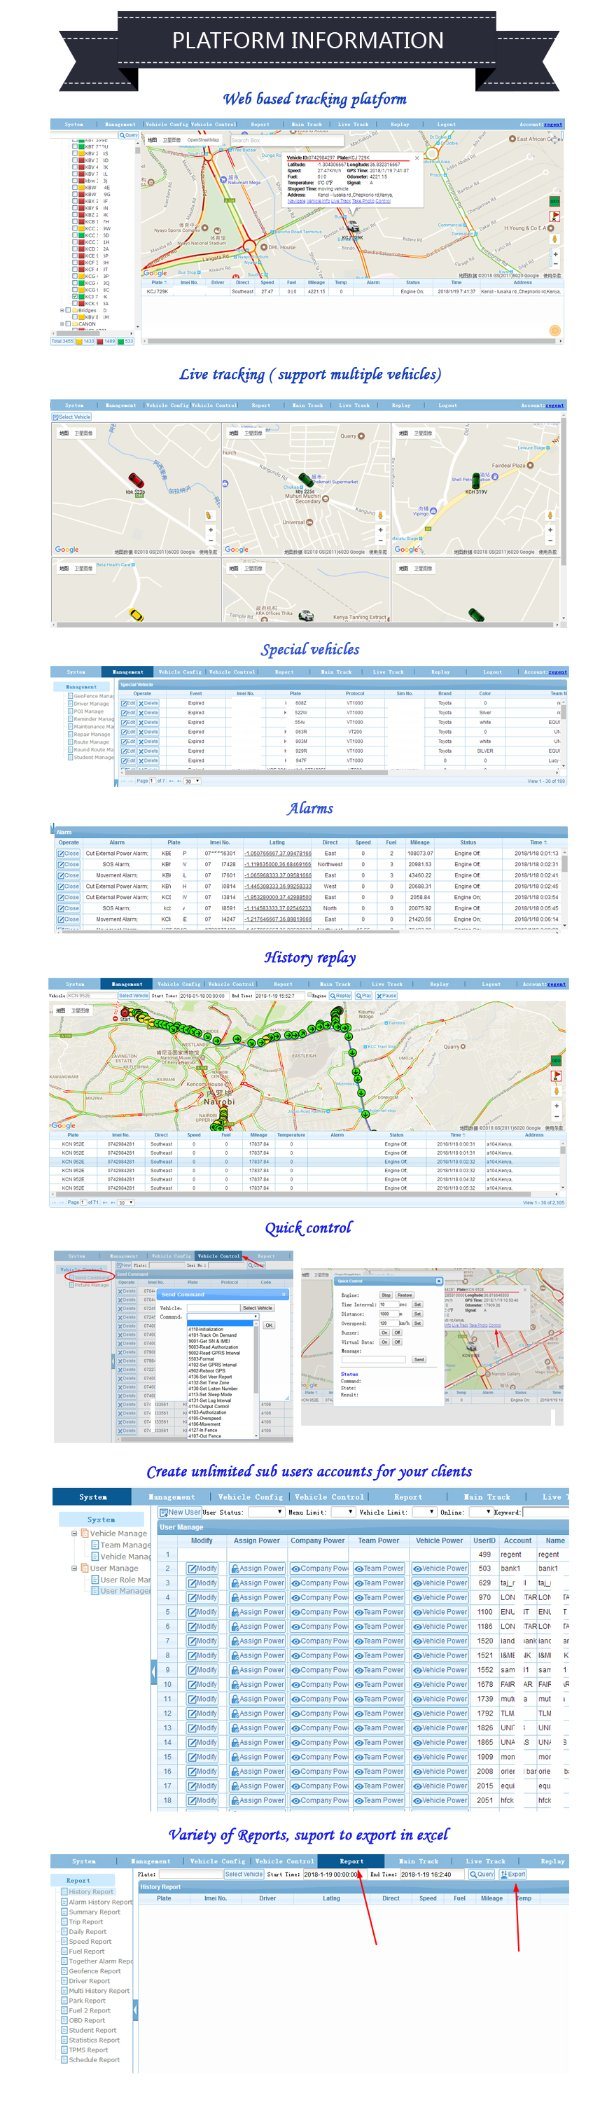 오픈 소스 코드 / 앱과 화물 차량 관리 구글 GPS 추적 시스템 플랫폼